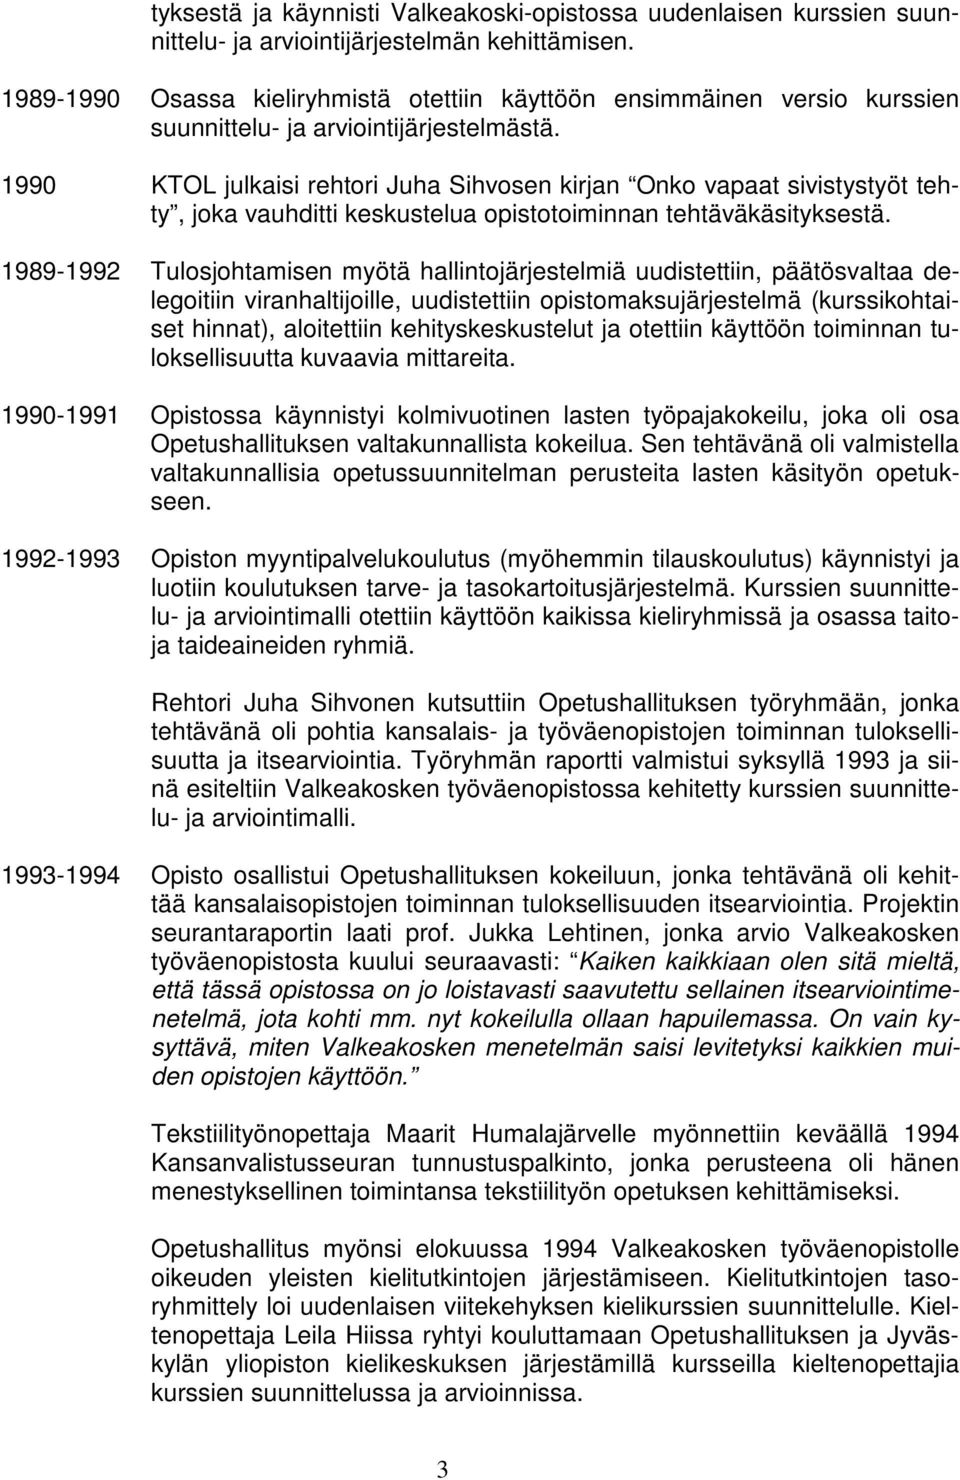 1990 KTOL julkaisi rehtori Juha Sihvosen kirjan Onko vapaat sivistystyöt tehty, joka vauhditti keskustelua opistotoiminnan tehtäväkäsityksestä.